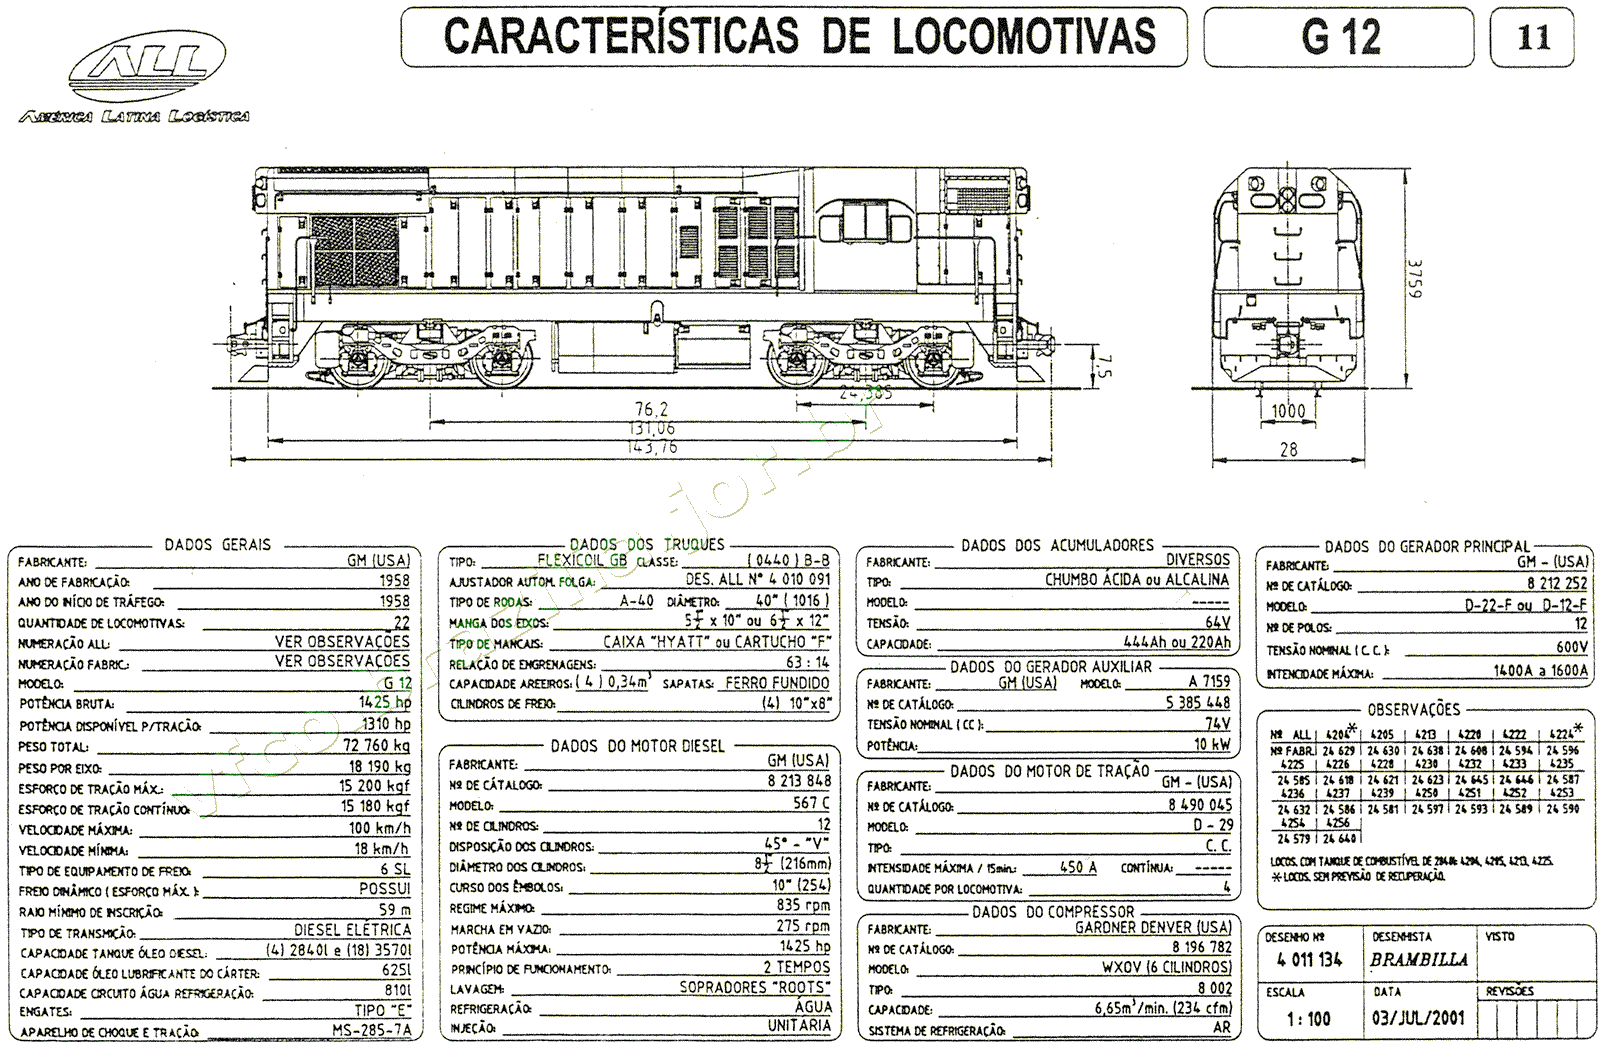 Planta e especificações das Locomotivas G12 nº 4204-4256 da ferrovia ALL